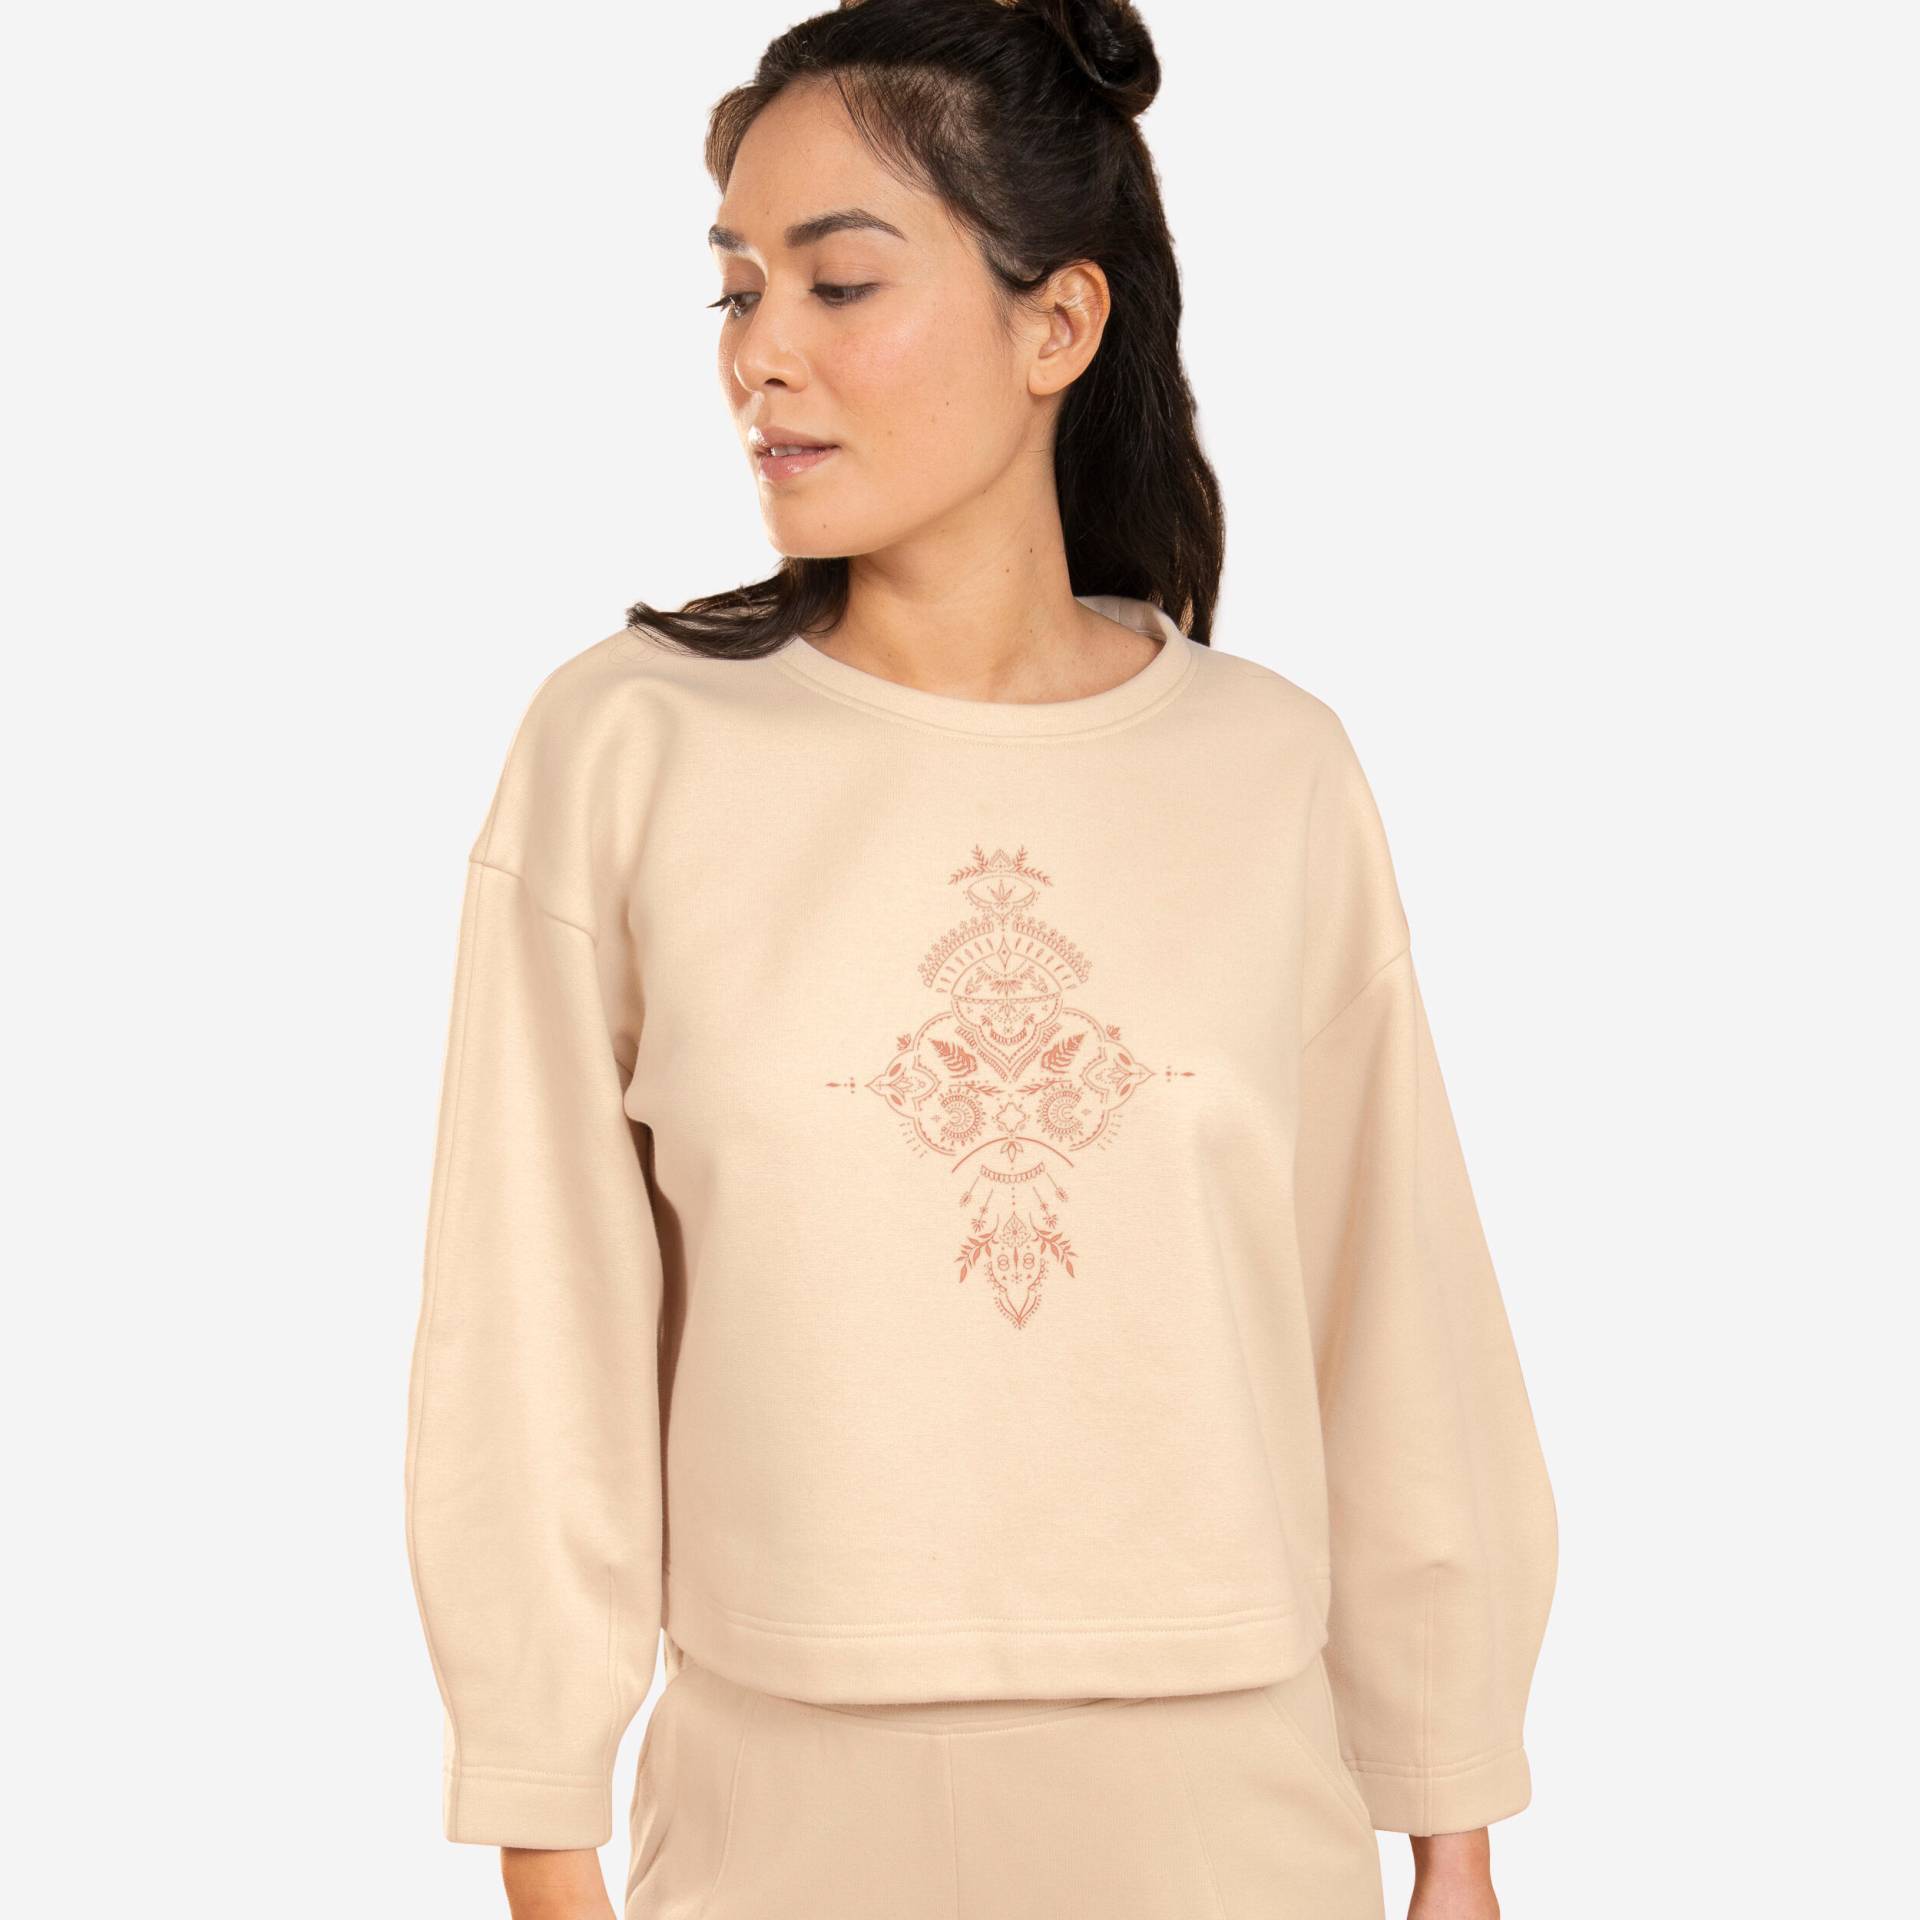 Yoga Sweatshirt warm bauchige Form ‒ beige von KIMJALY